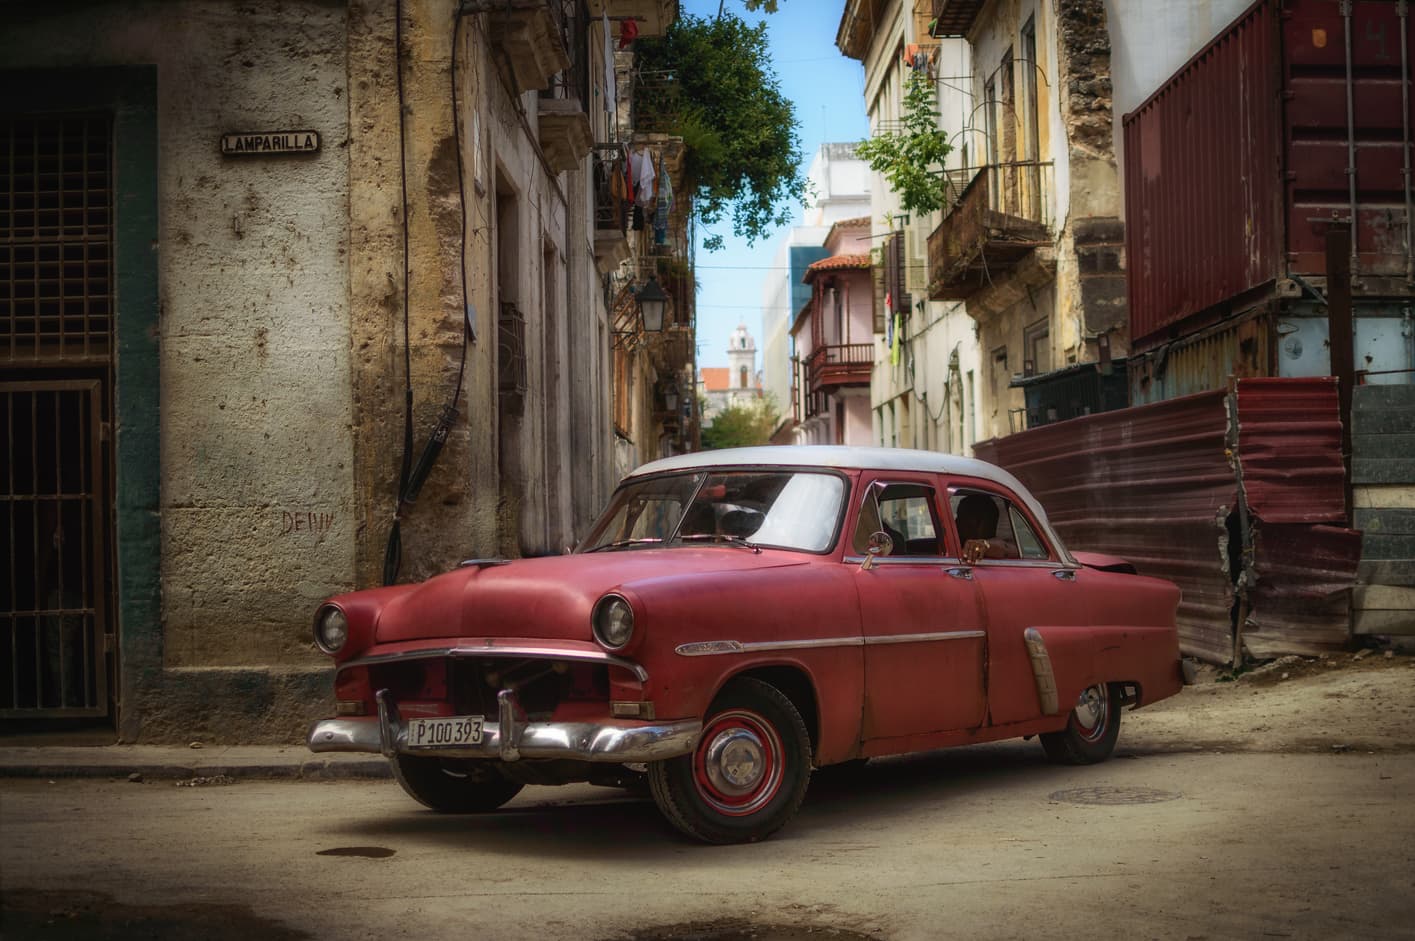 Imprescindible en la Habana. coche antiguo rojo calle lamparilla la Habana vieja